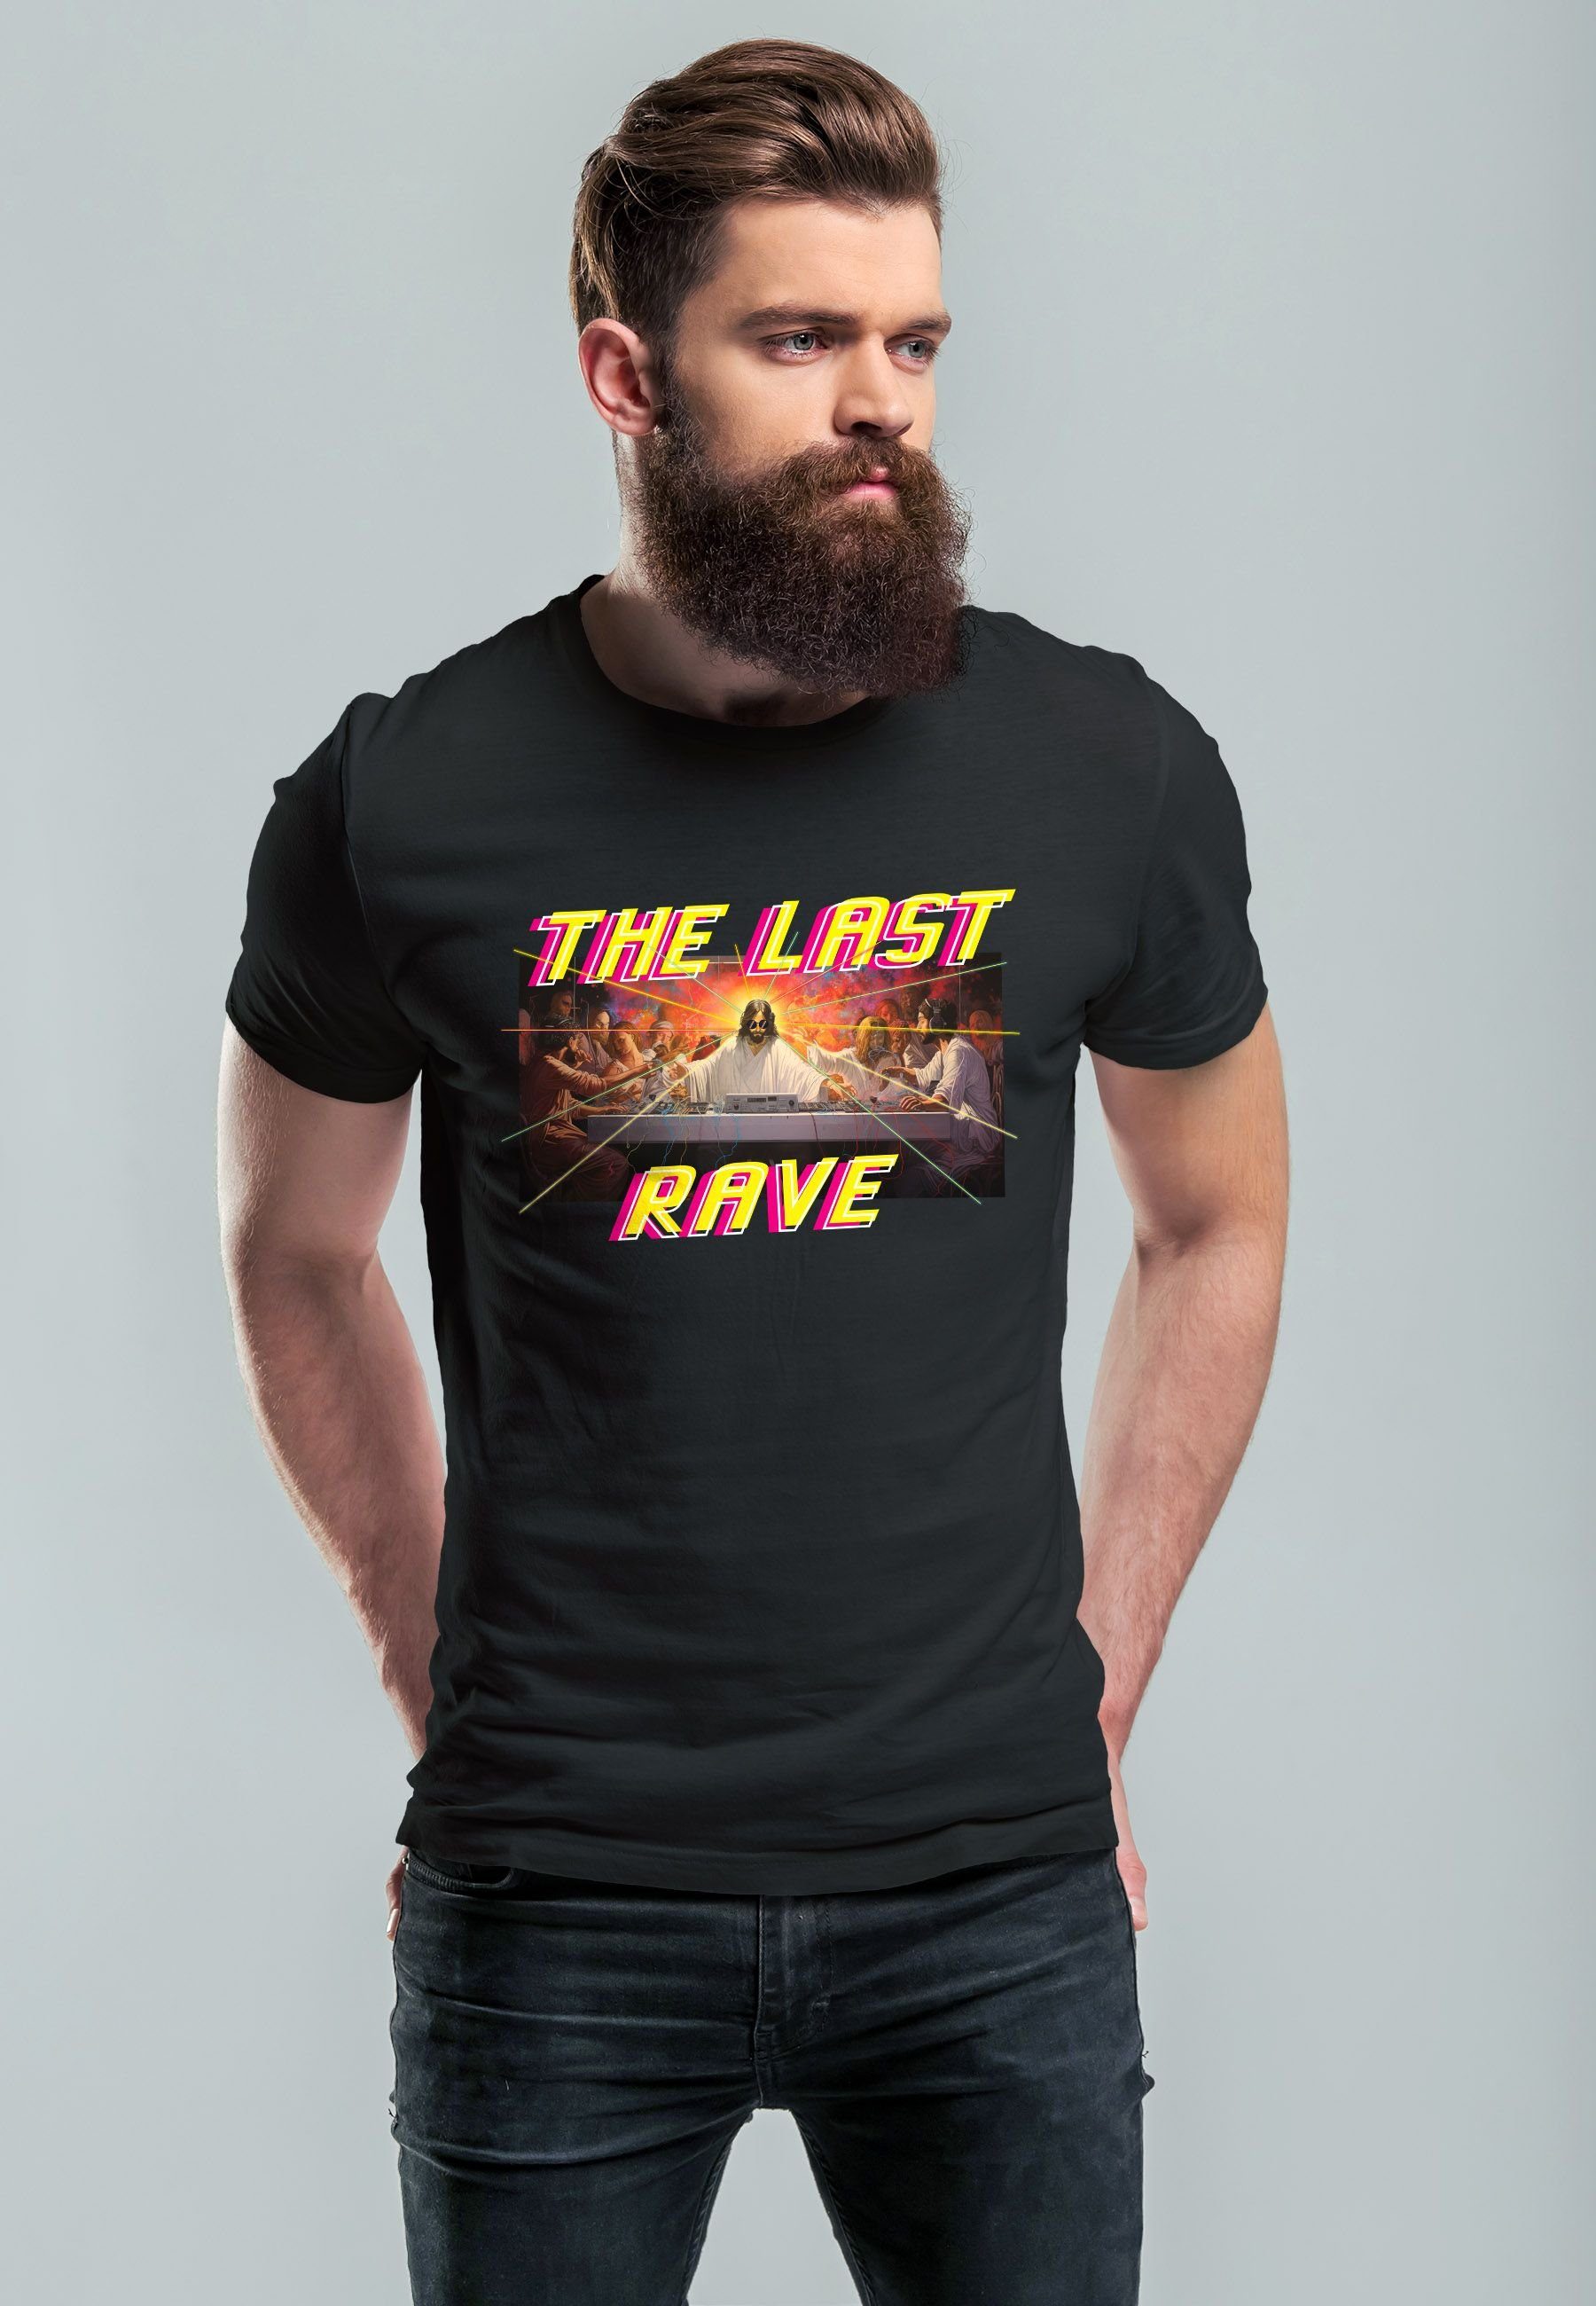 Rave Techno Abendmahl mit The Print-Shirt Parodie Print Last Das Jesus Herren schwarz T-Shirt letzte Neverless